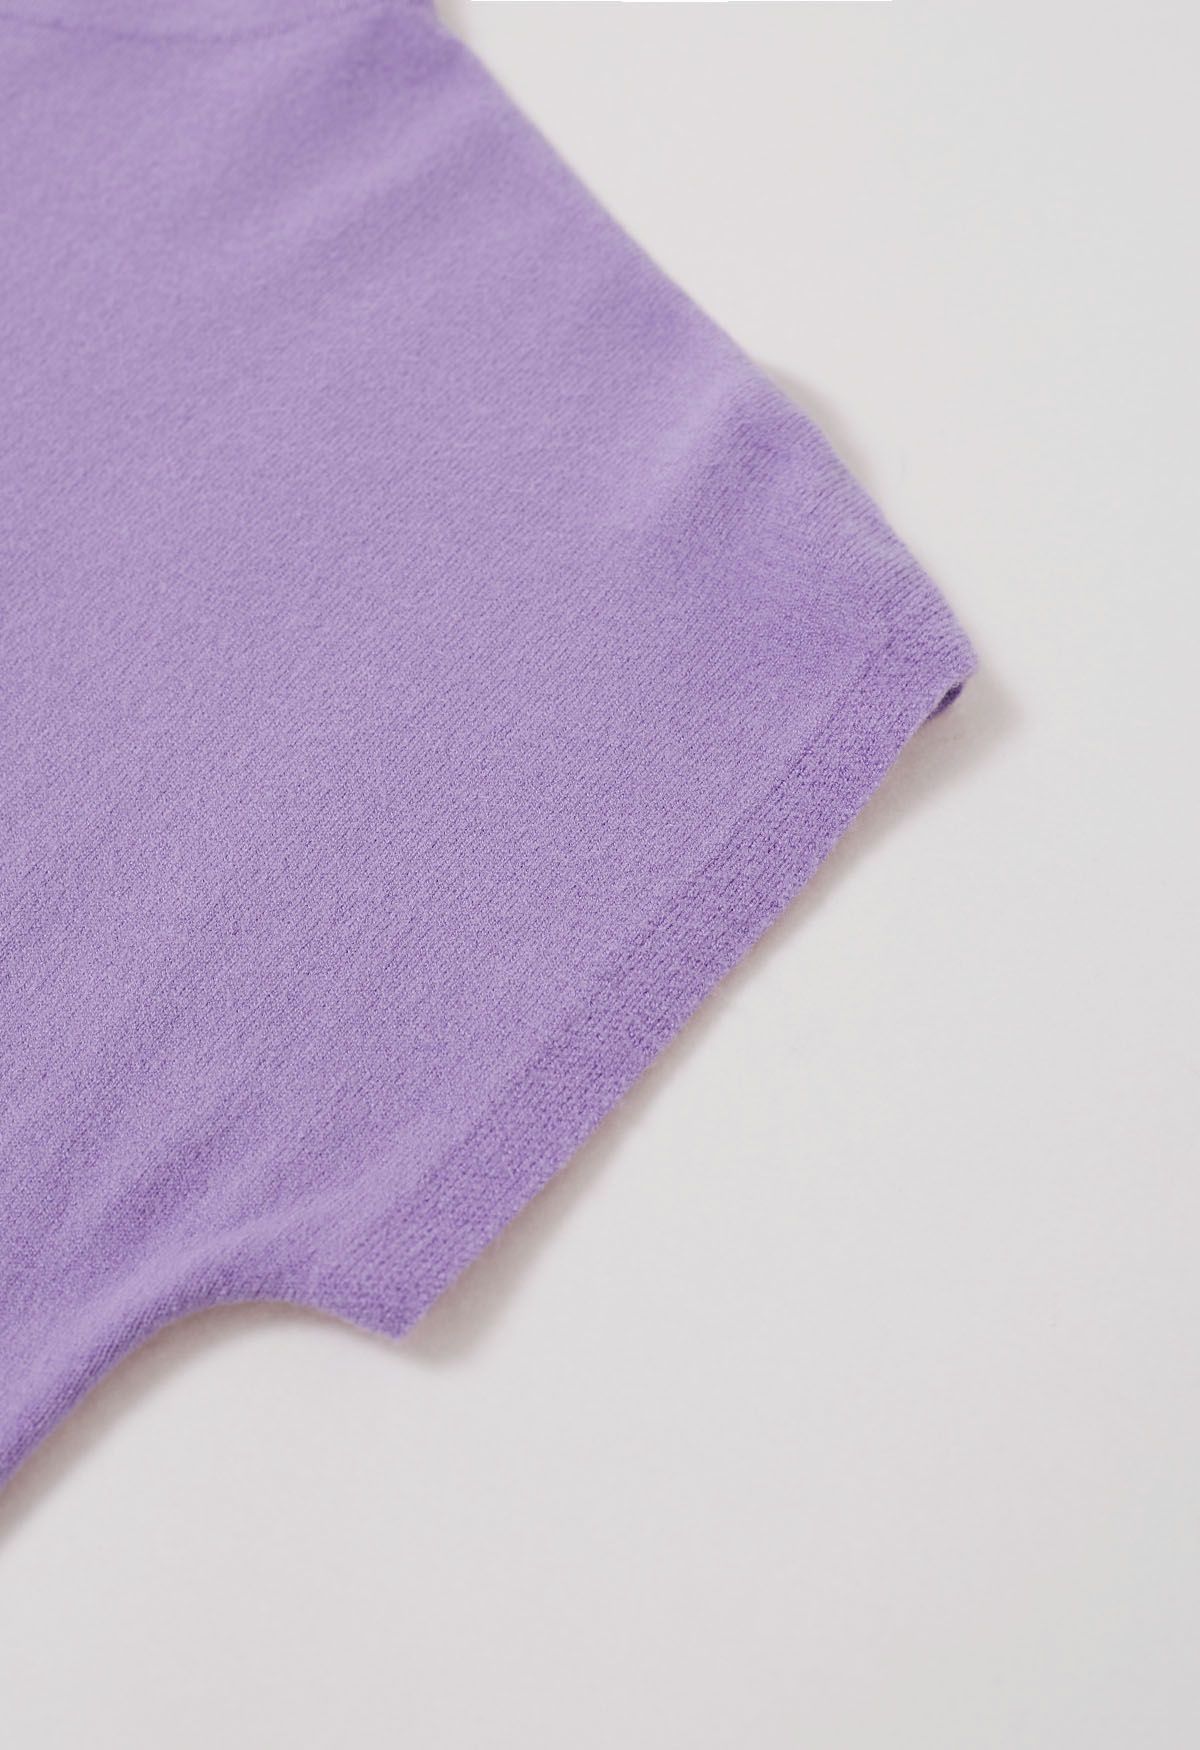 Haut en tricot à manches courtes de couleur unie en lilas